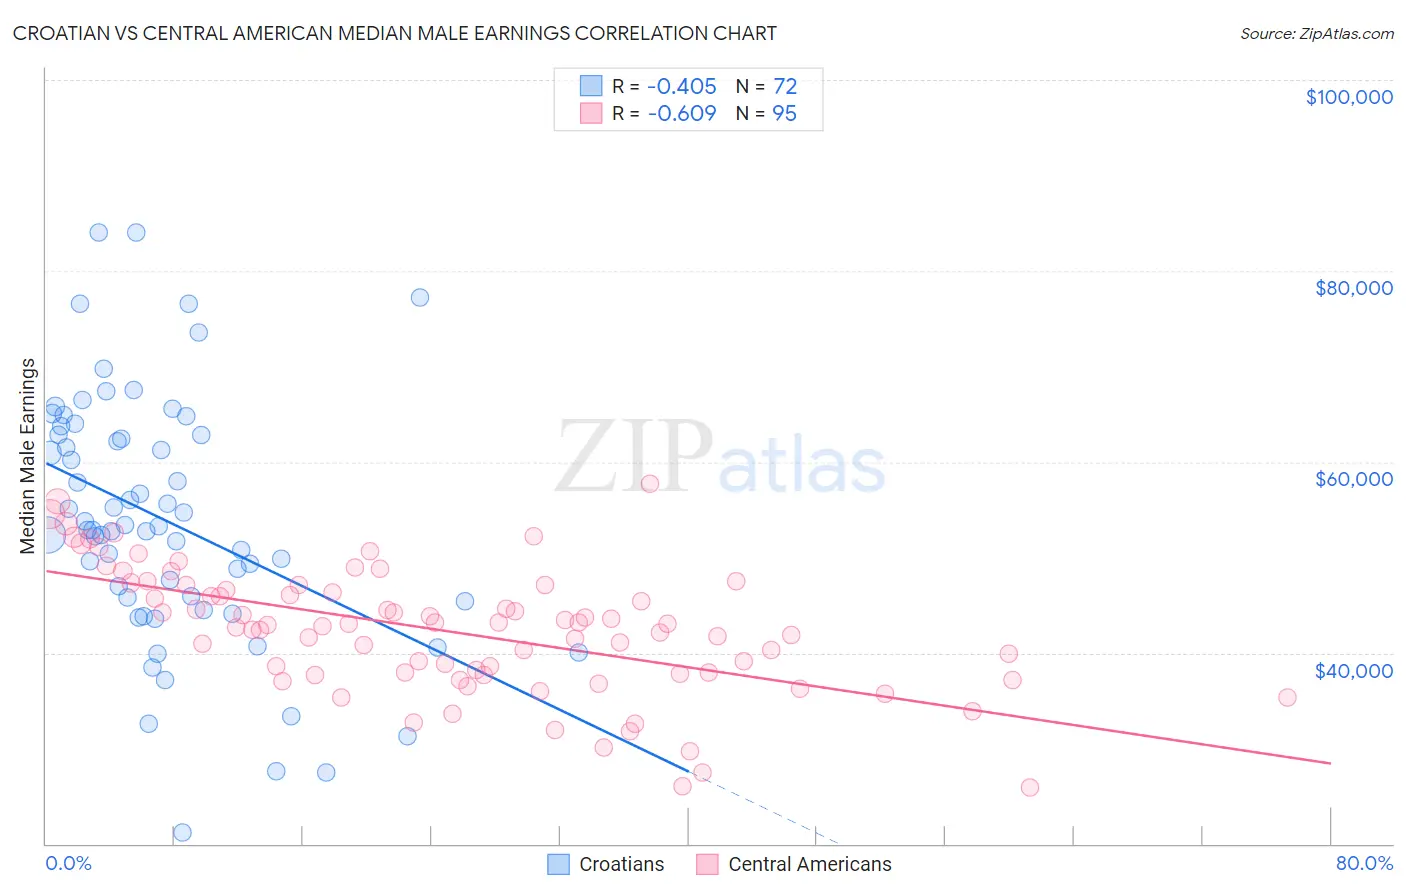 Croatian vs Central American Median Male Earnings